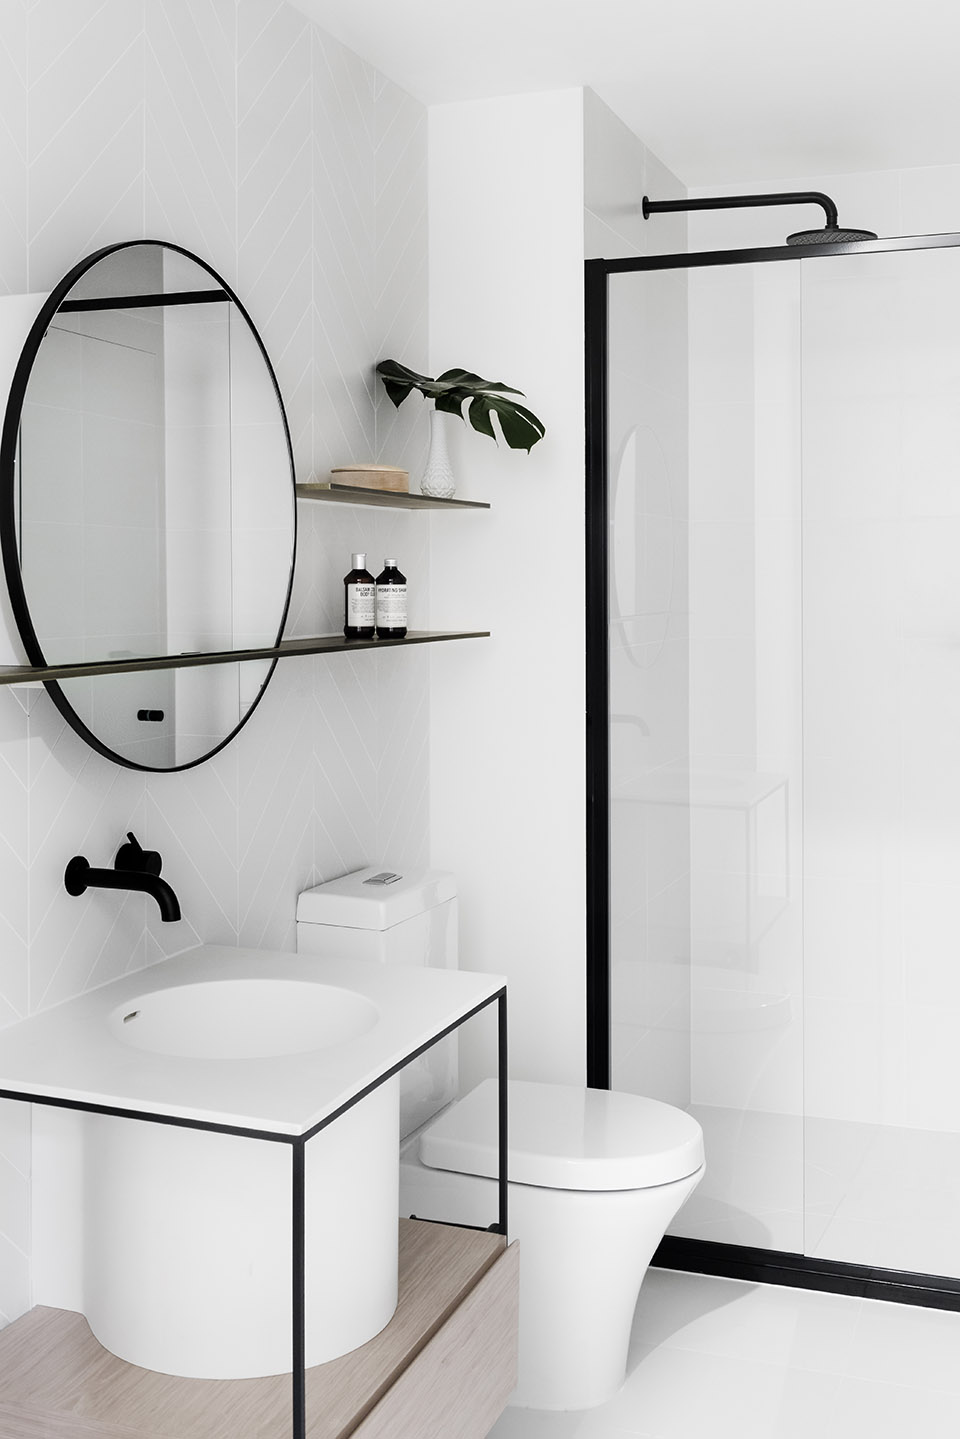 卫浴空间在材质方面突出整洁感，洁具造型简单，黑色线条的勾勒增加了空间的清新感。